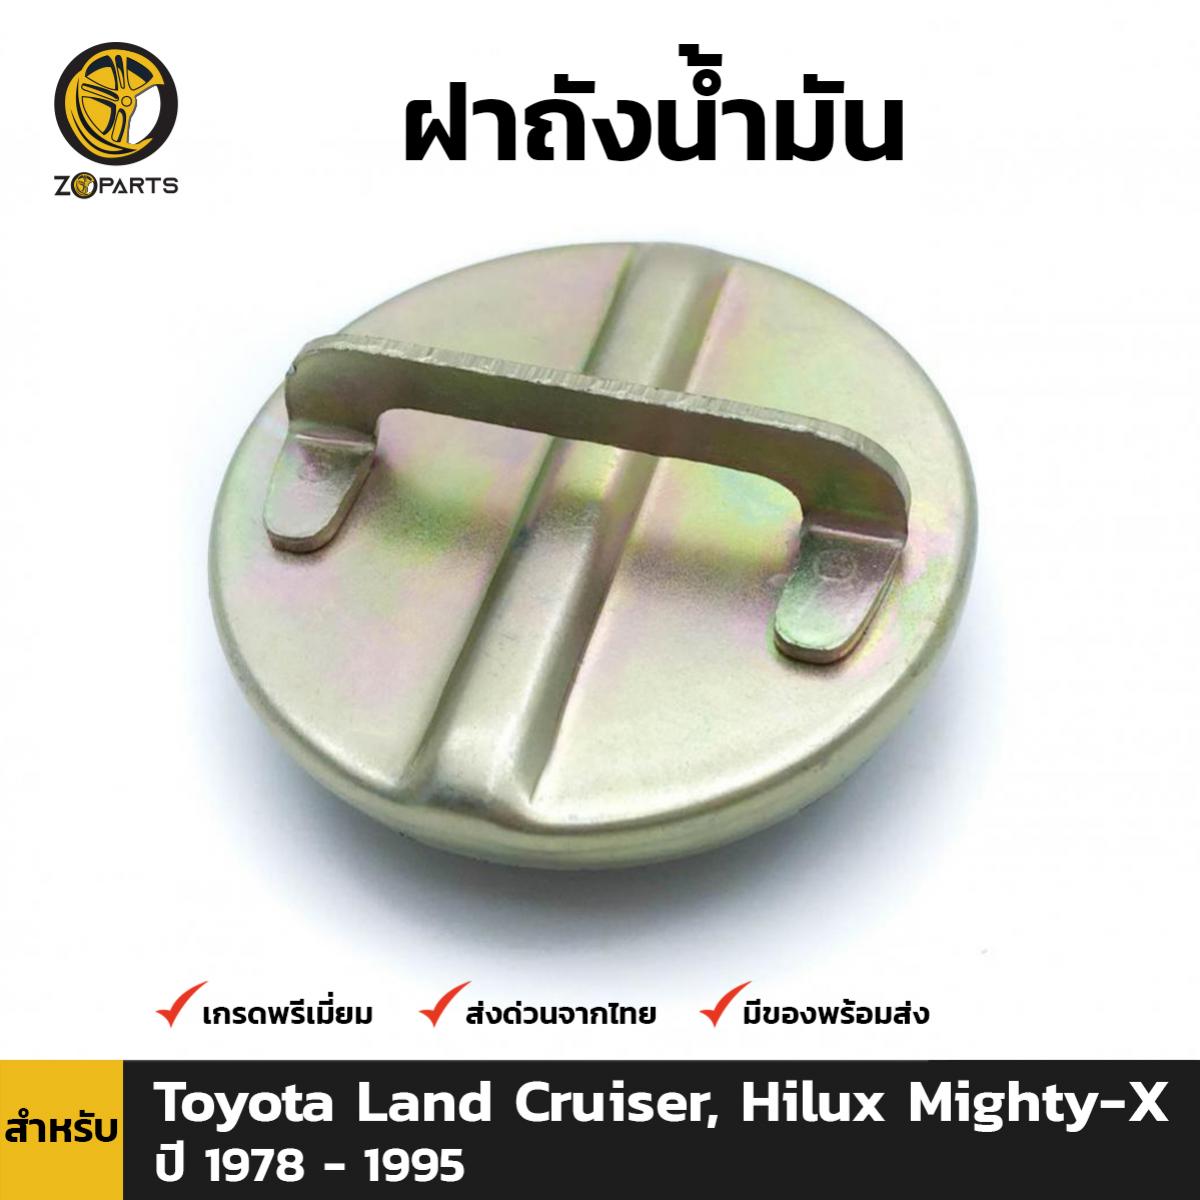 ฝาถังน้ำมัน สำหรับ Toyota Land Cruiser, Hilux Mighty - X ปี 1978 - 1995 โตโยต้า แลนด์ ครูเซอร์ ไฮลักซ์ ไมตี้เอ็กซ์